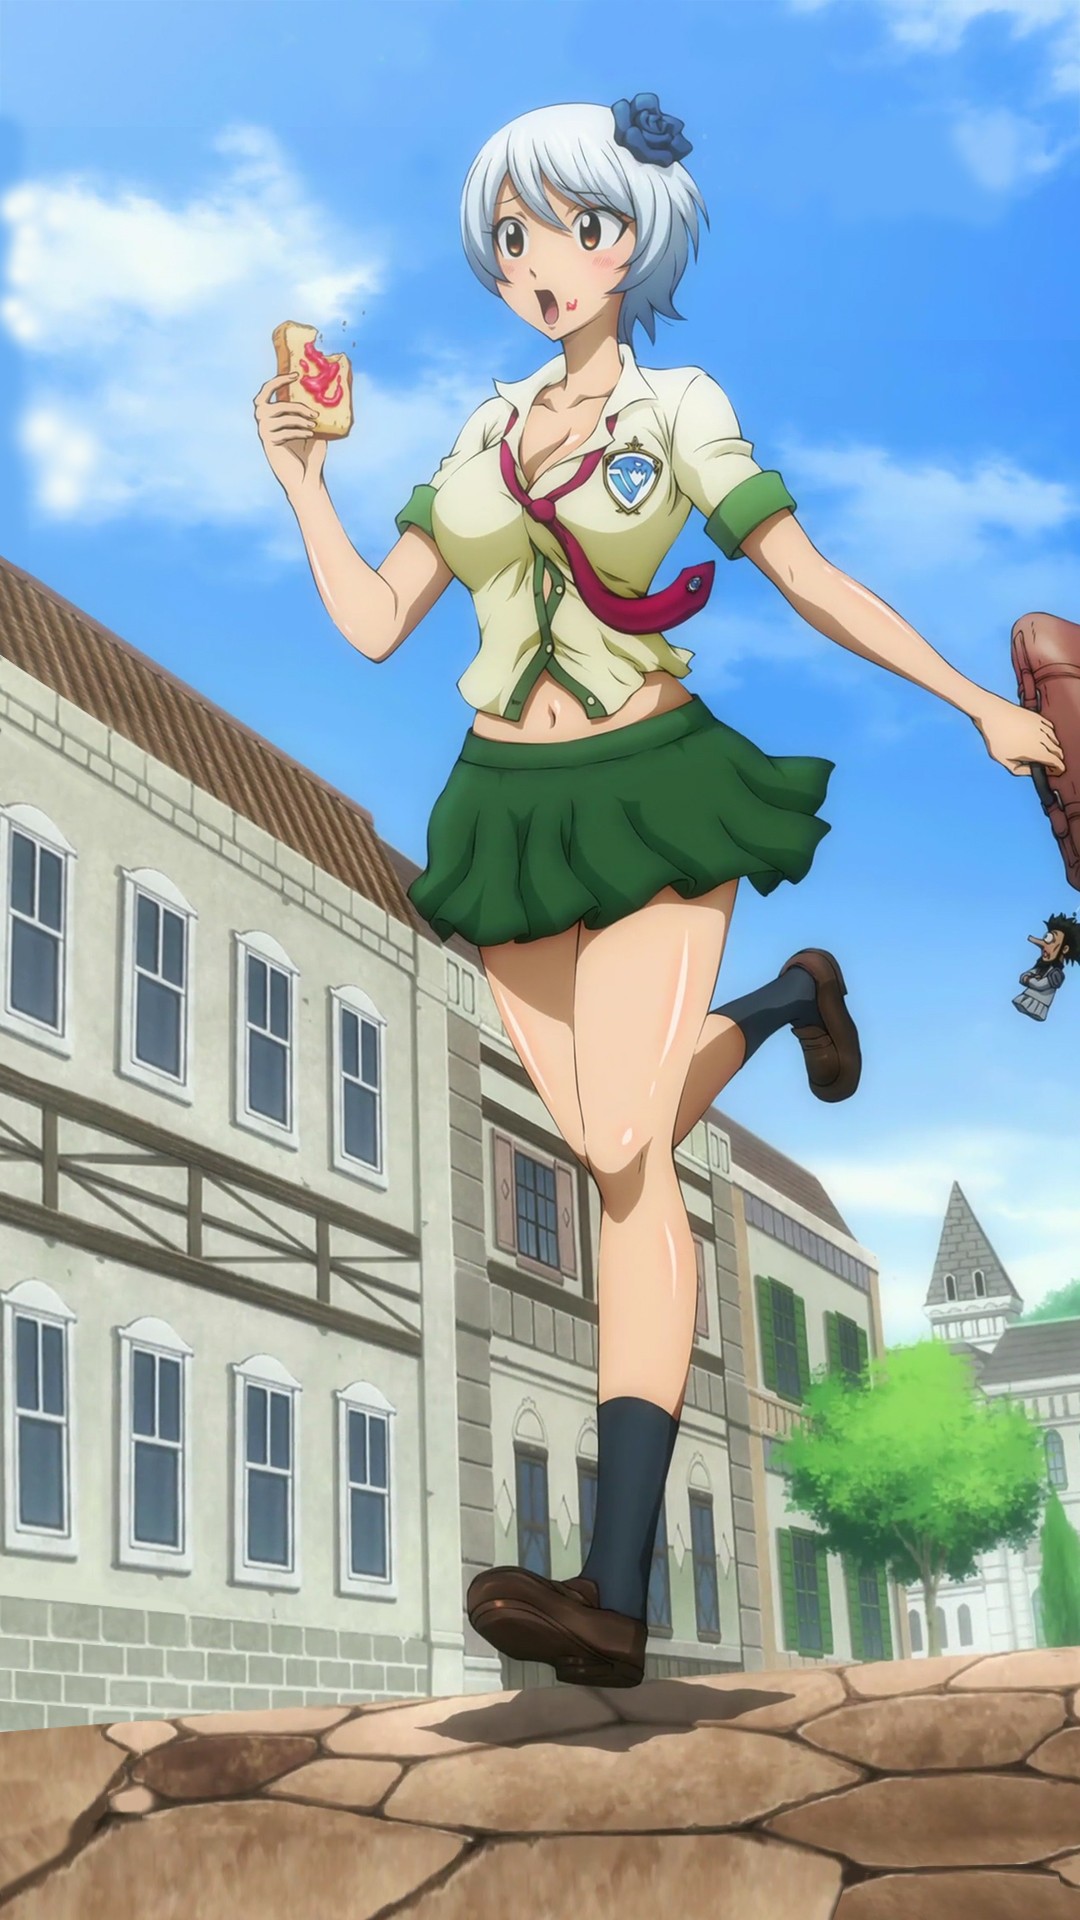 Anime 1080x1920 Fairy Tail schoolgirl anime girls anime skirt